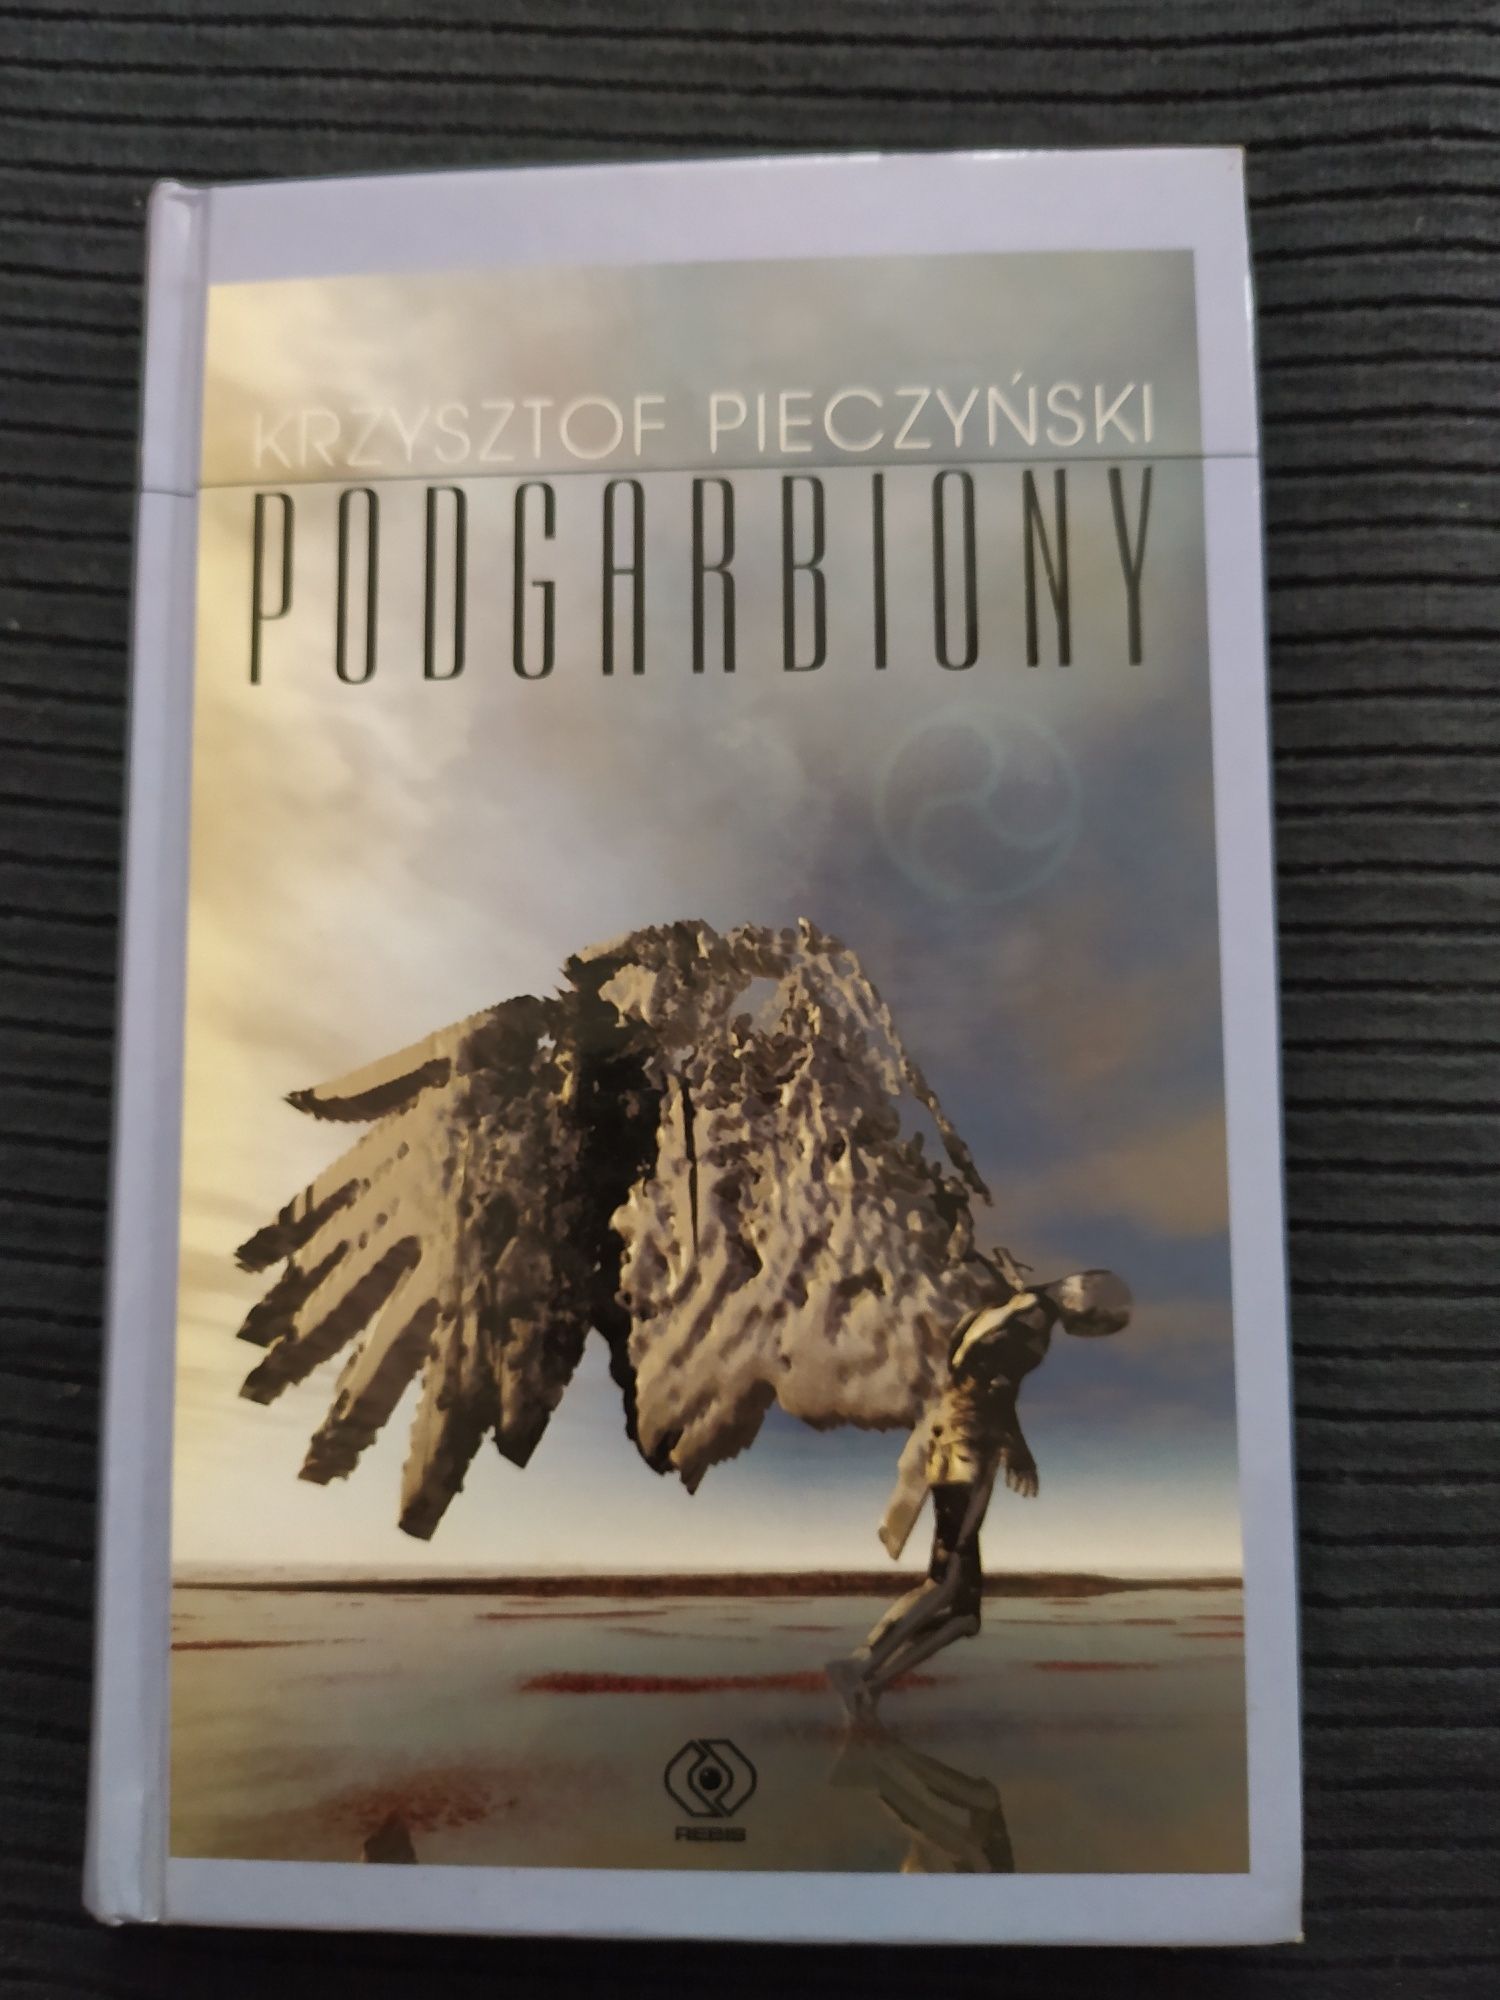 Podgarbiony Krzysztof Pieczyński